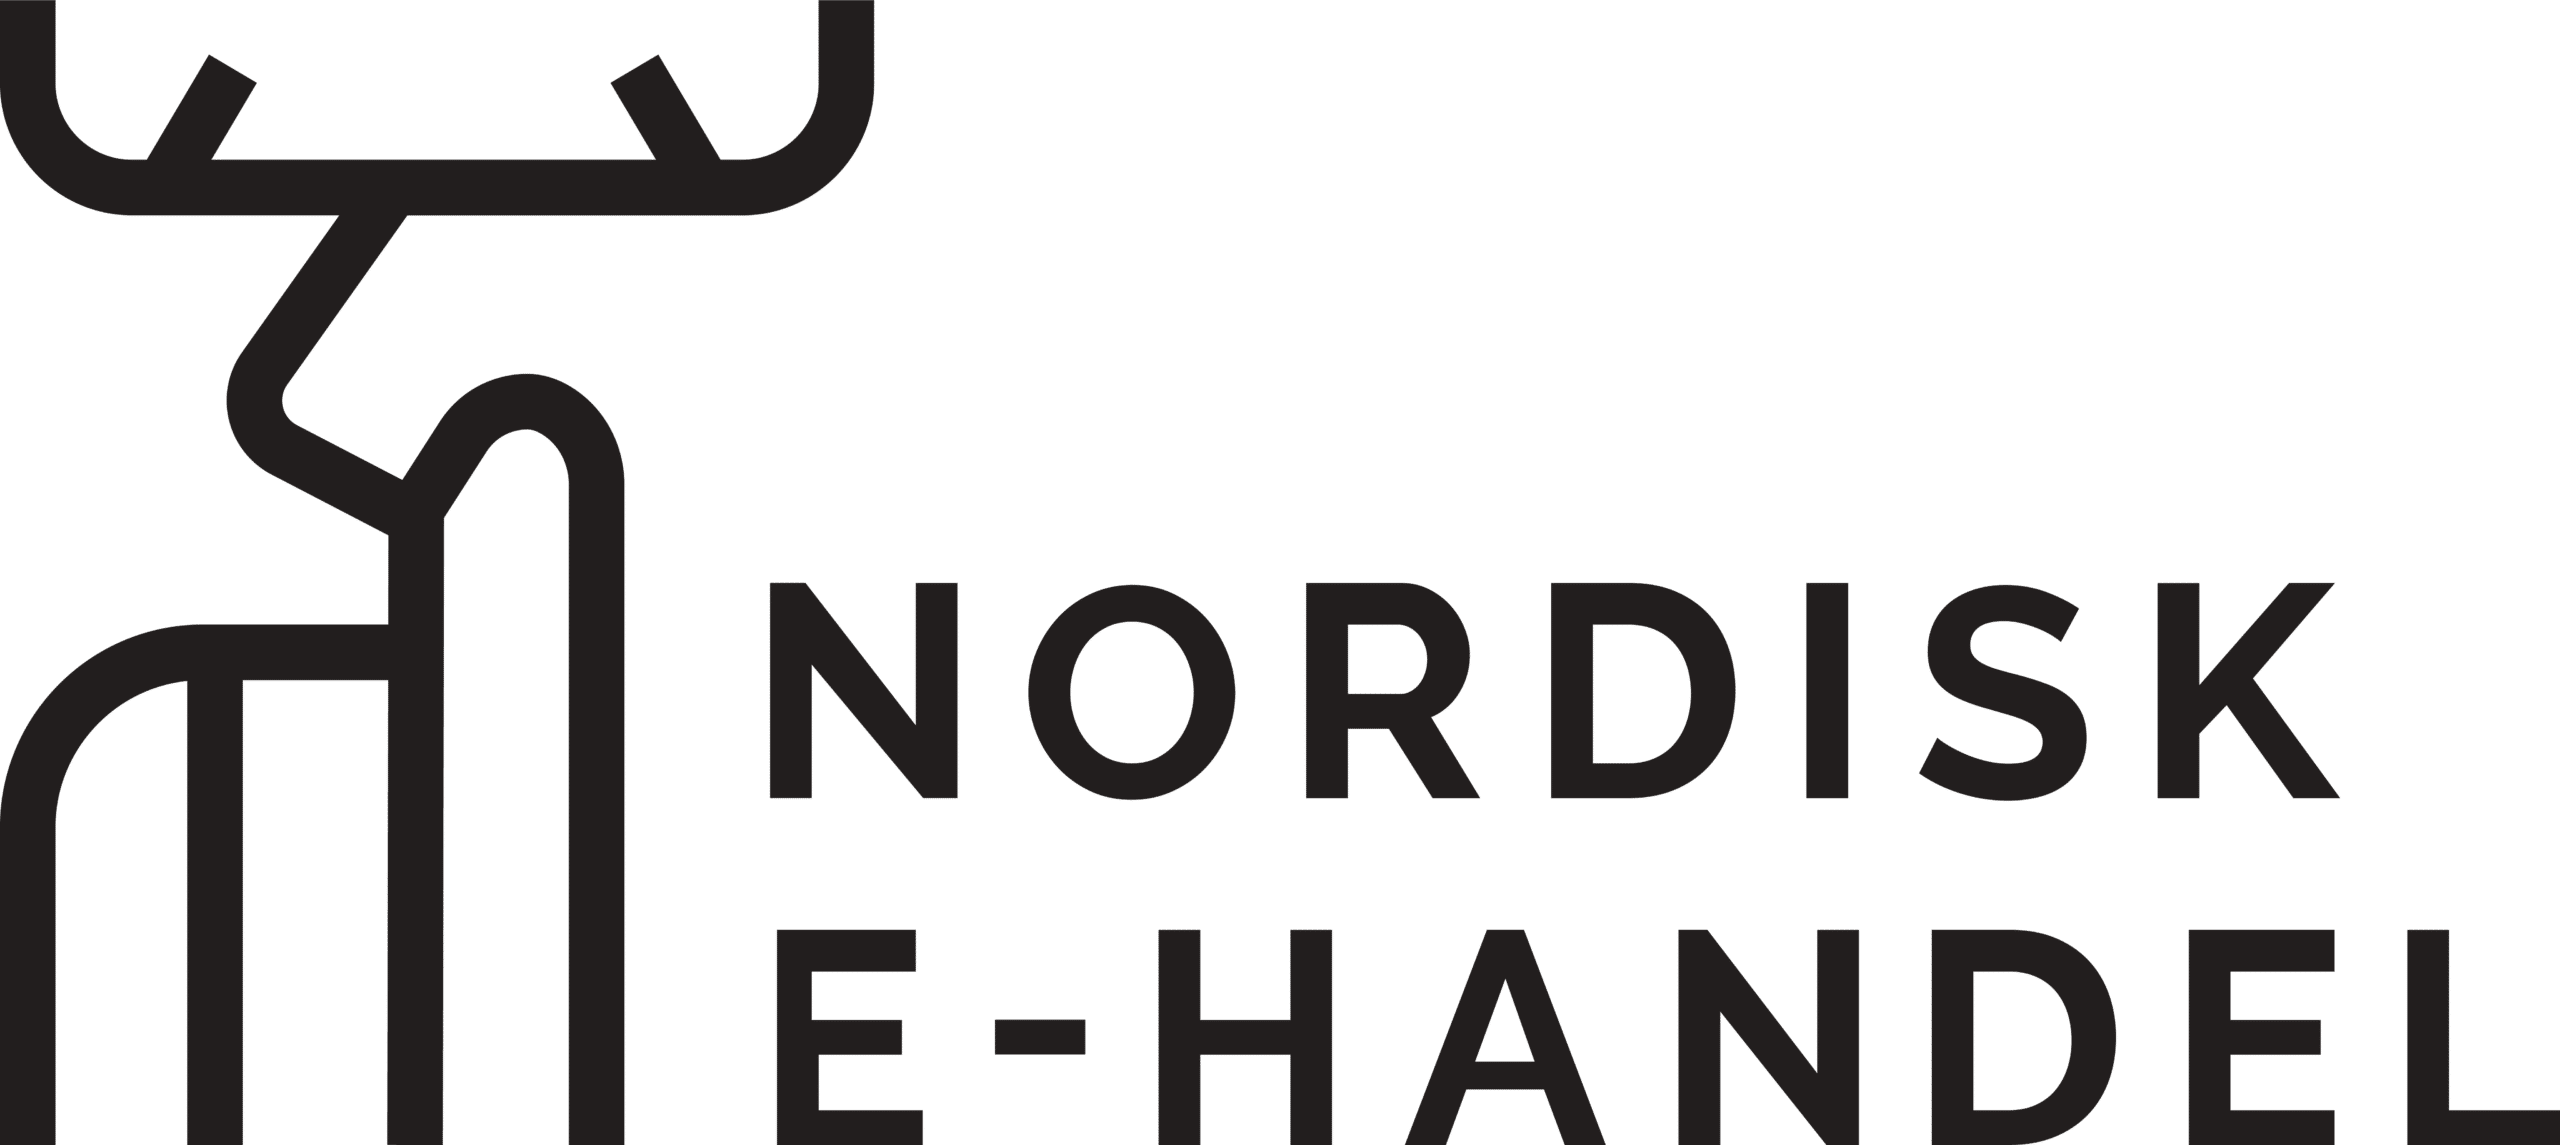 Nordisk ehandel_logo_platform_partner